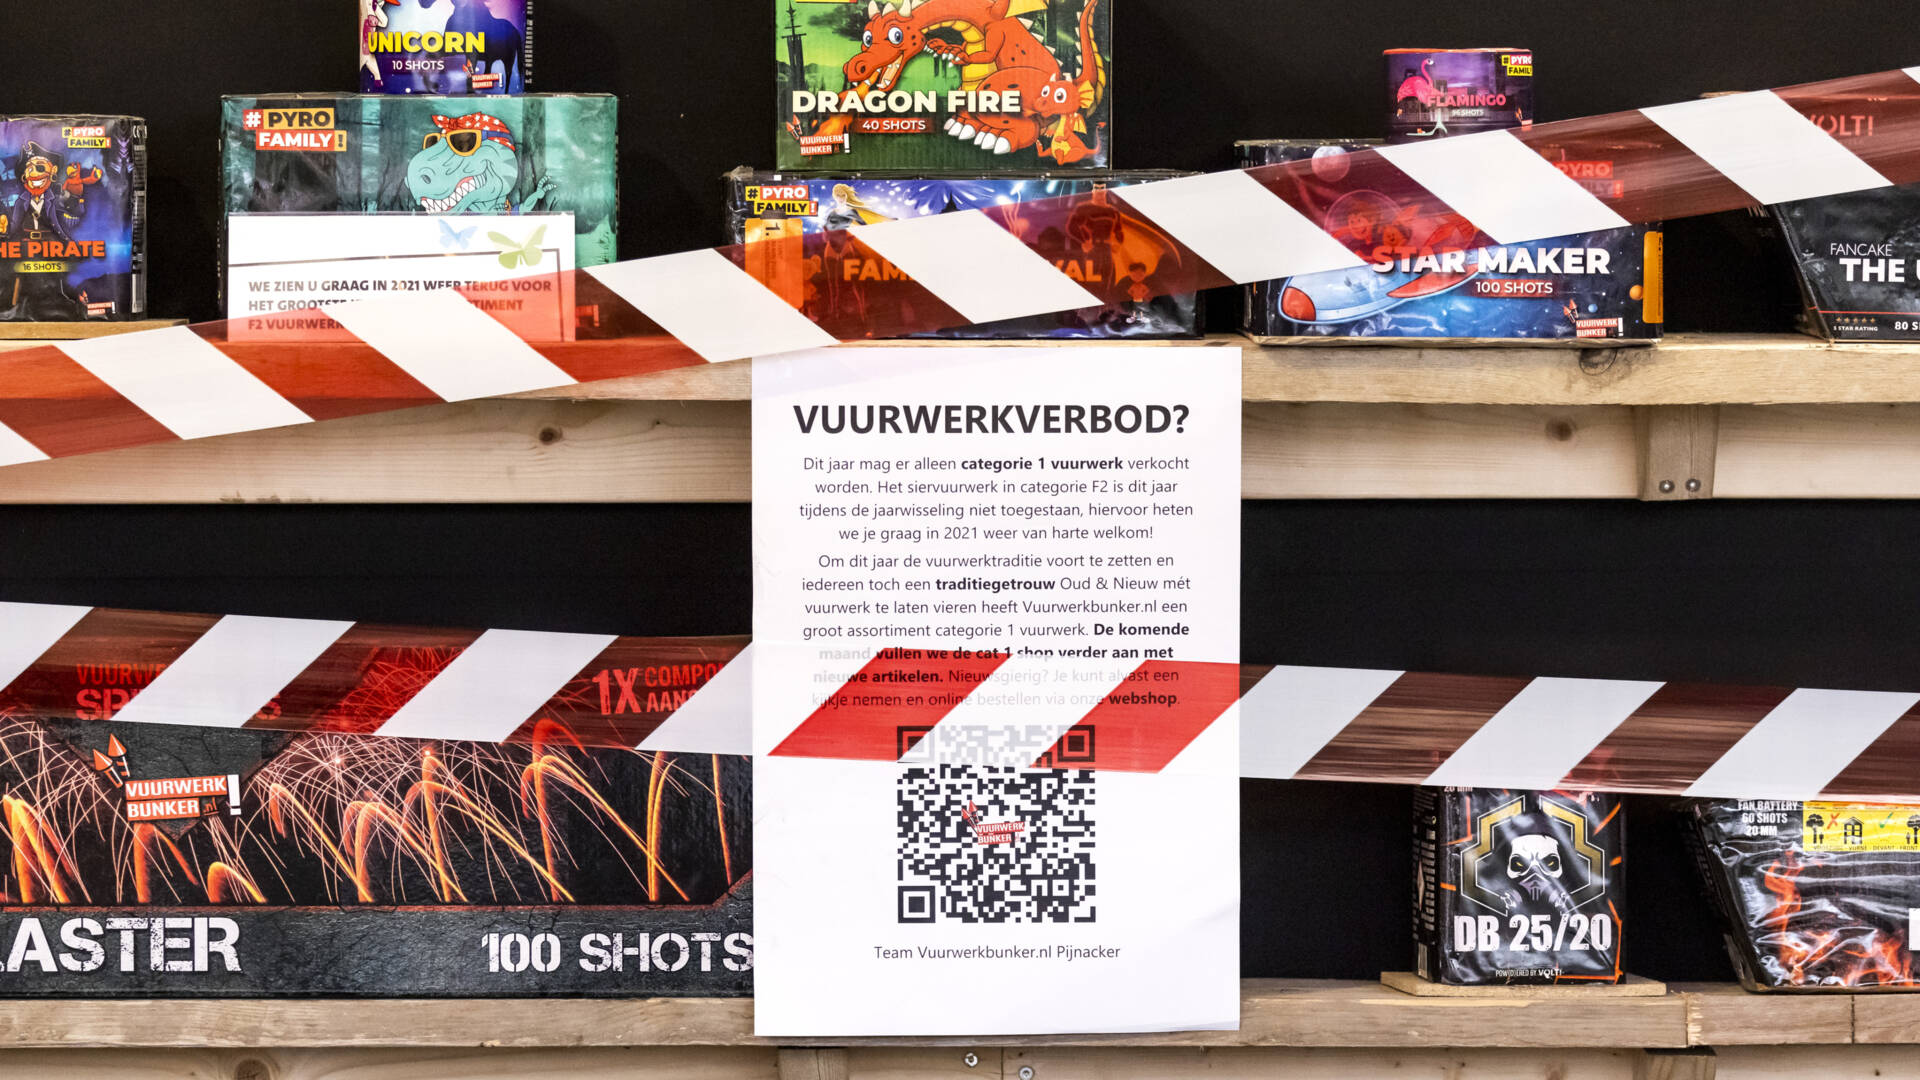 القضاء الهولندي: حظر بيع الألعاب النارية لا يزال ساري المفعول هذا العام